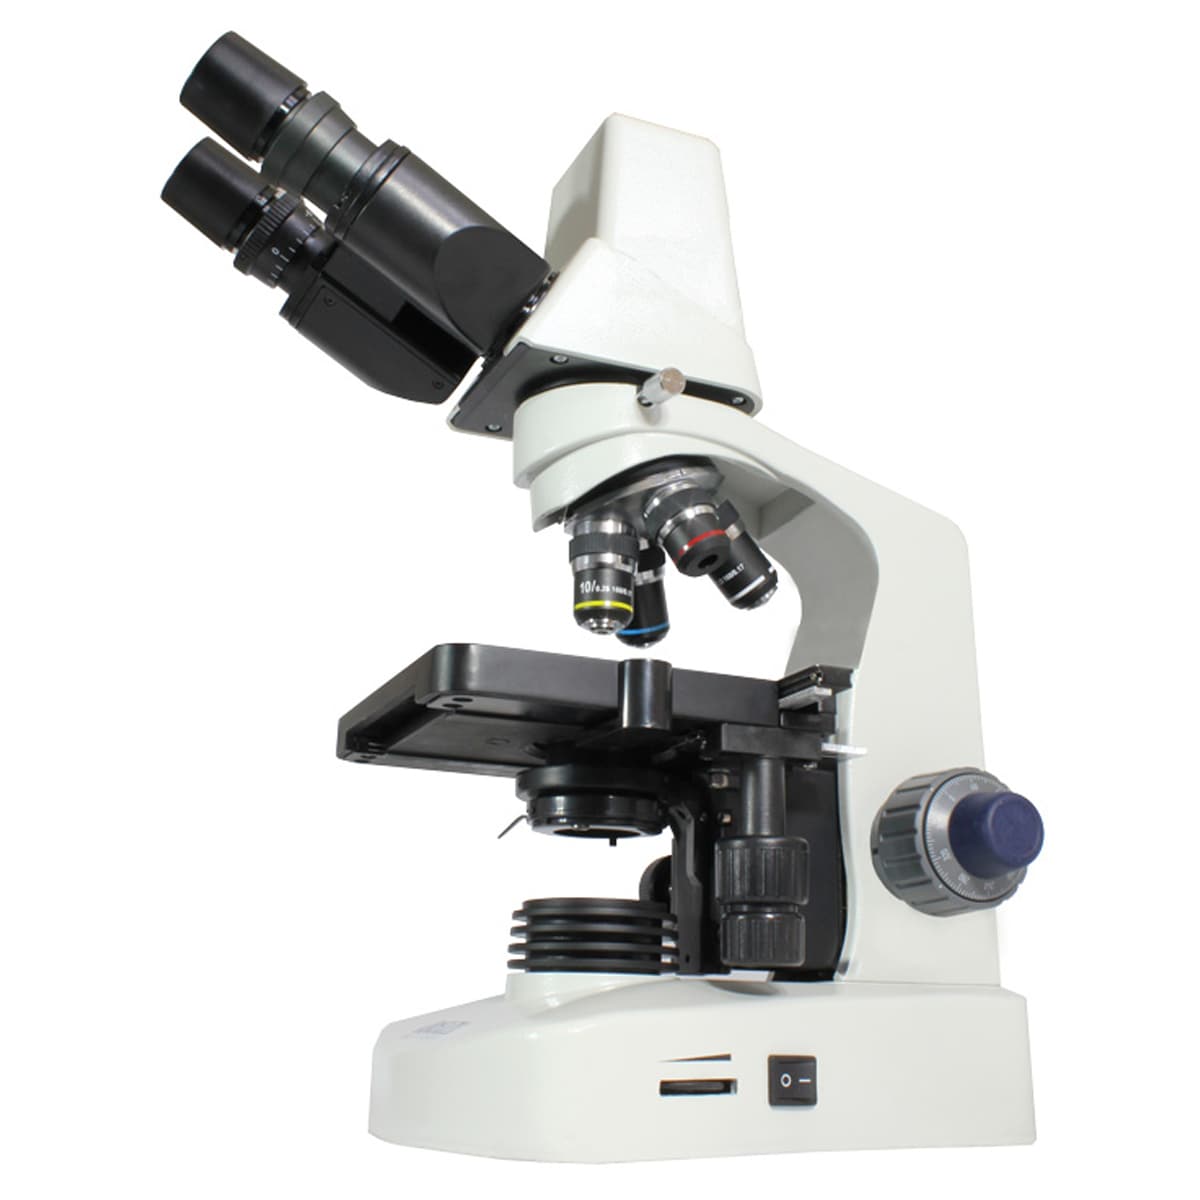 Мікроскоп Delta Optical Genetic Pro з камерою 3 MP